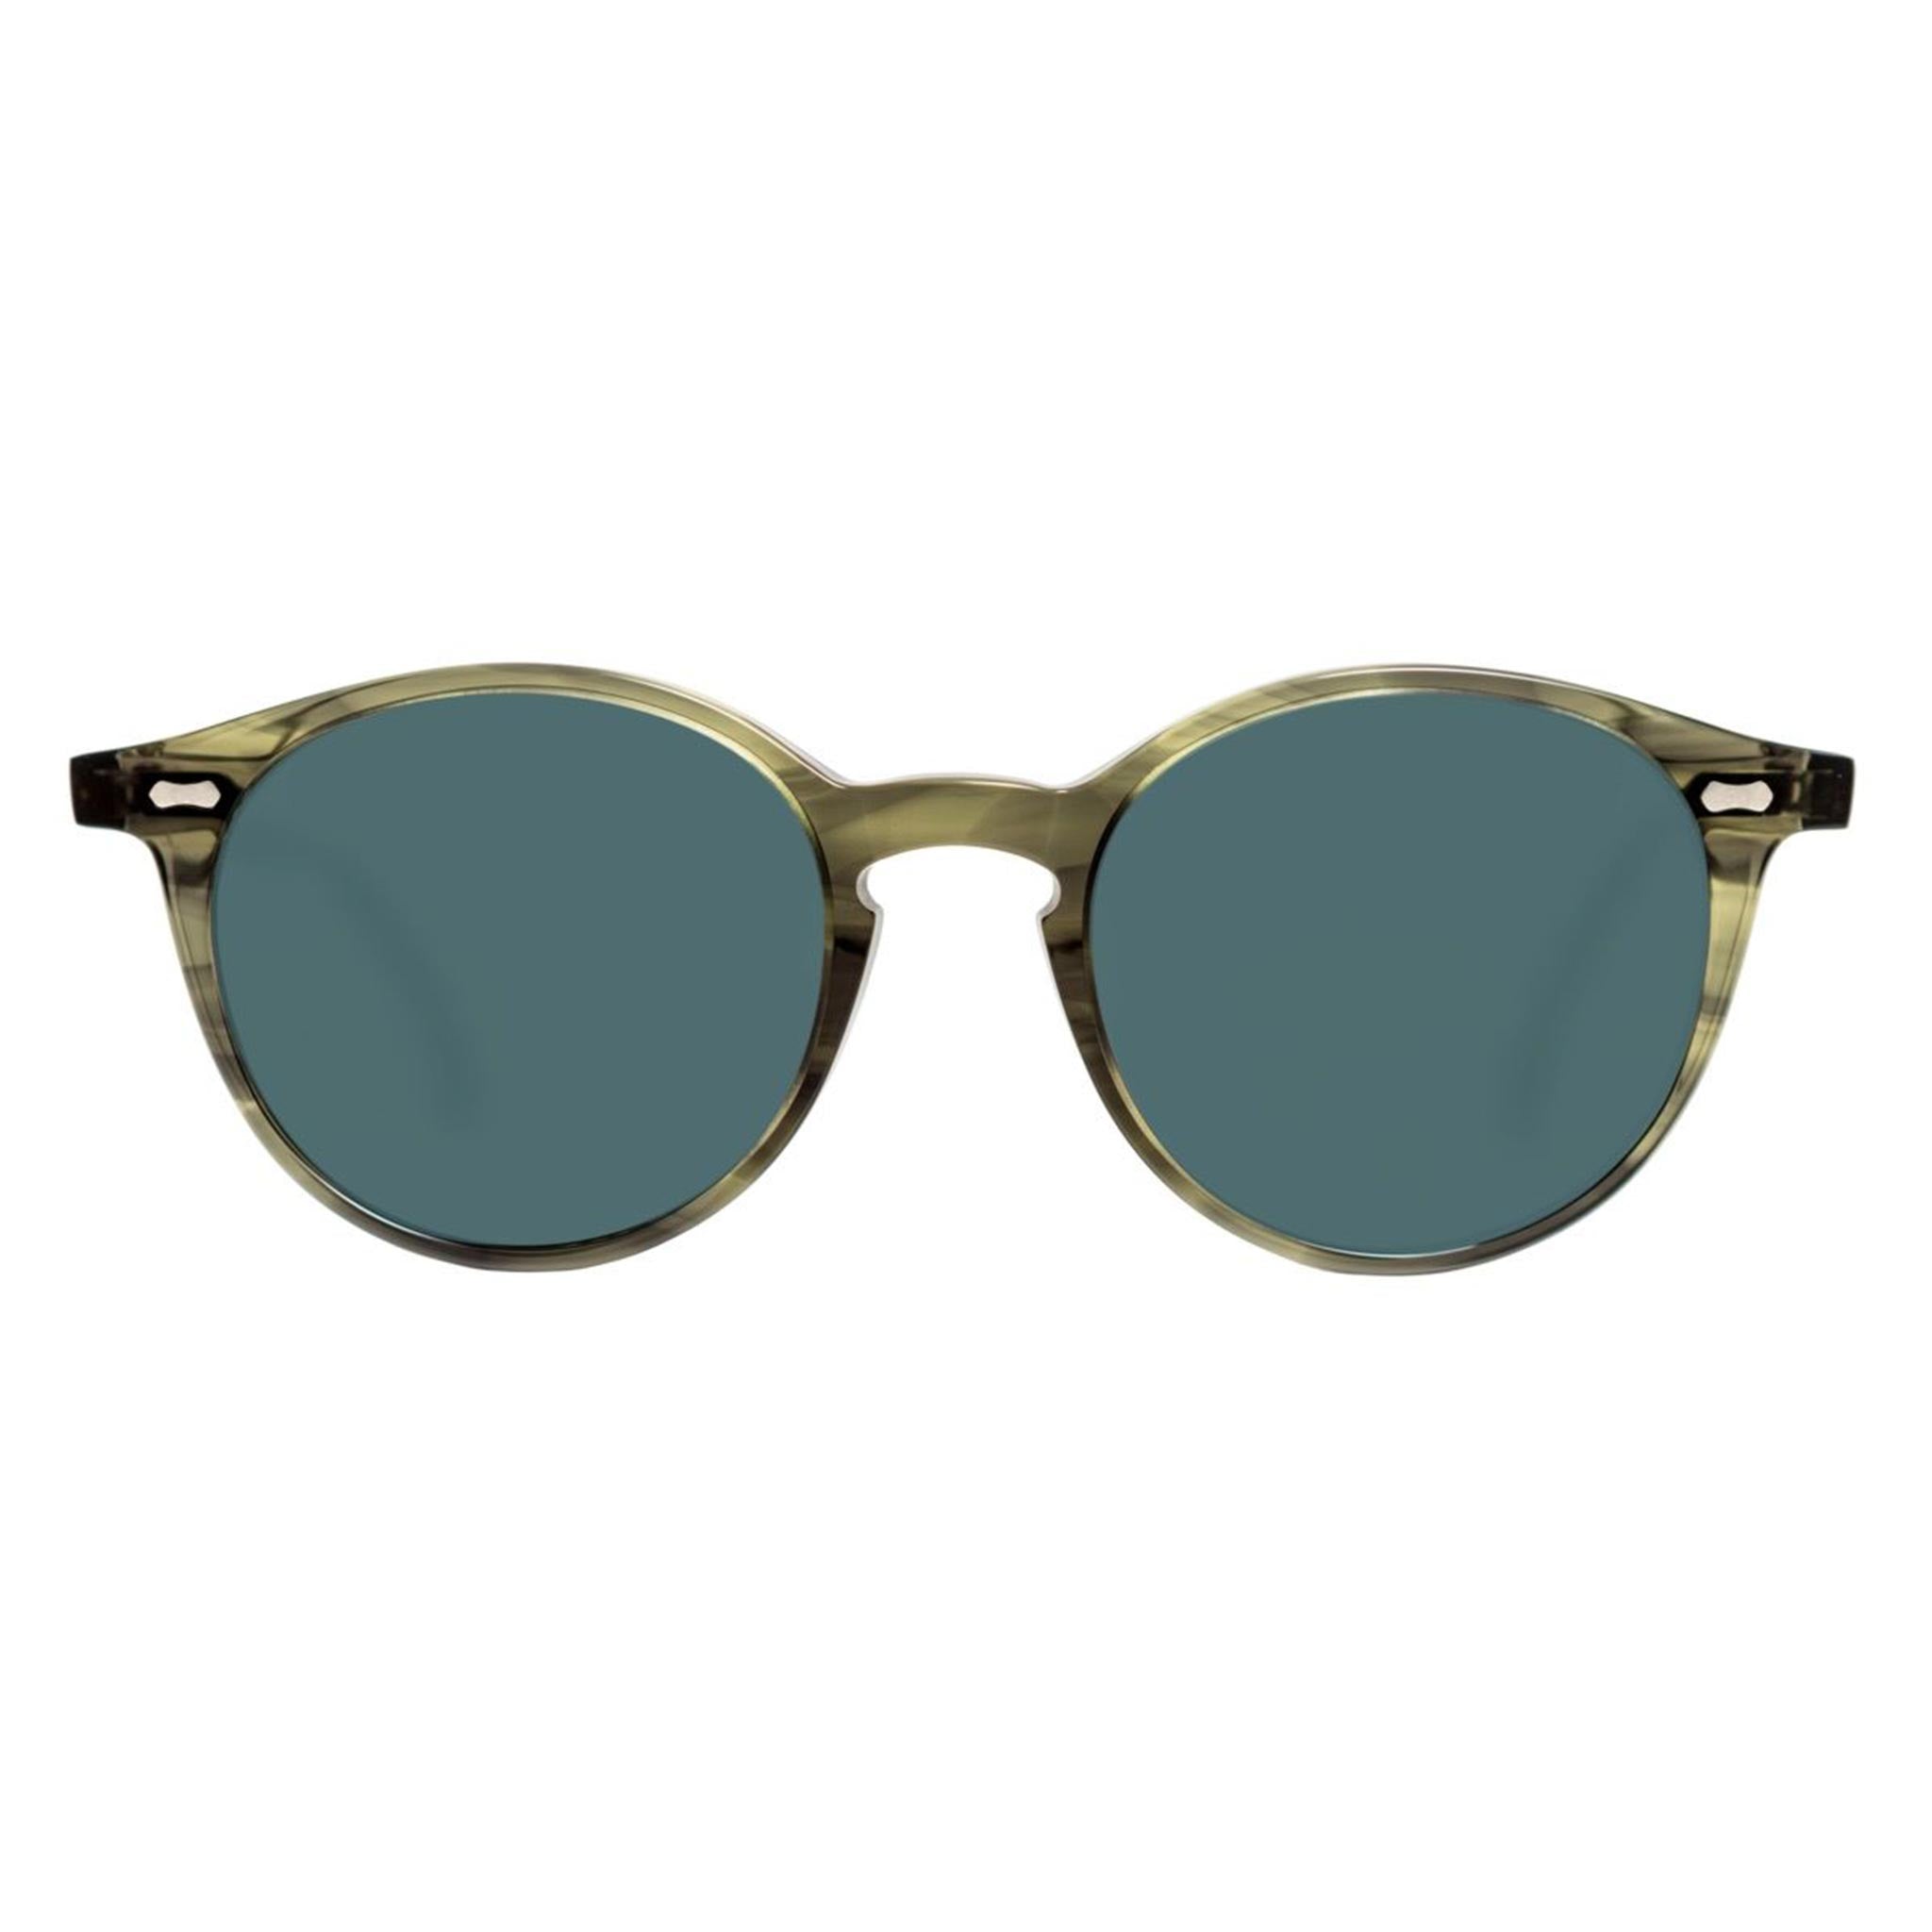 Cran Sunglasses in Eco Green